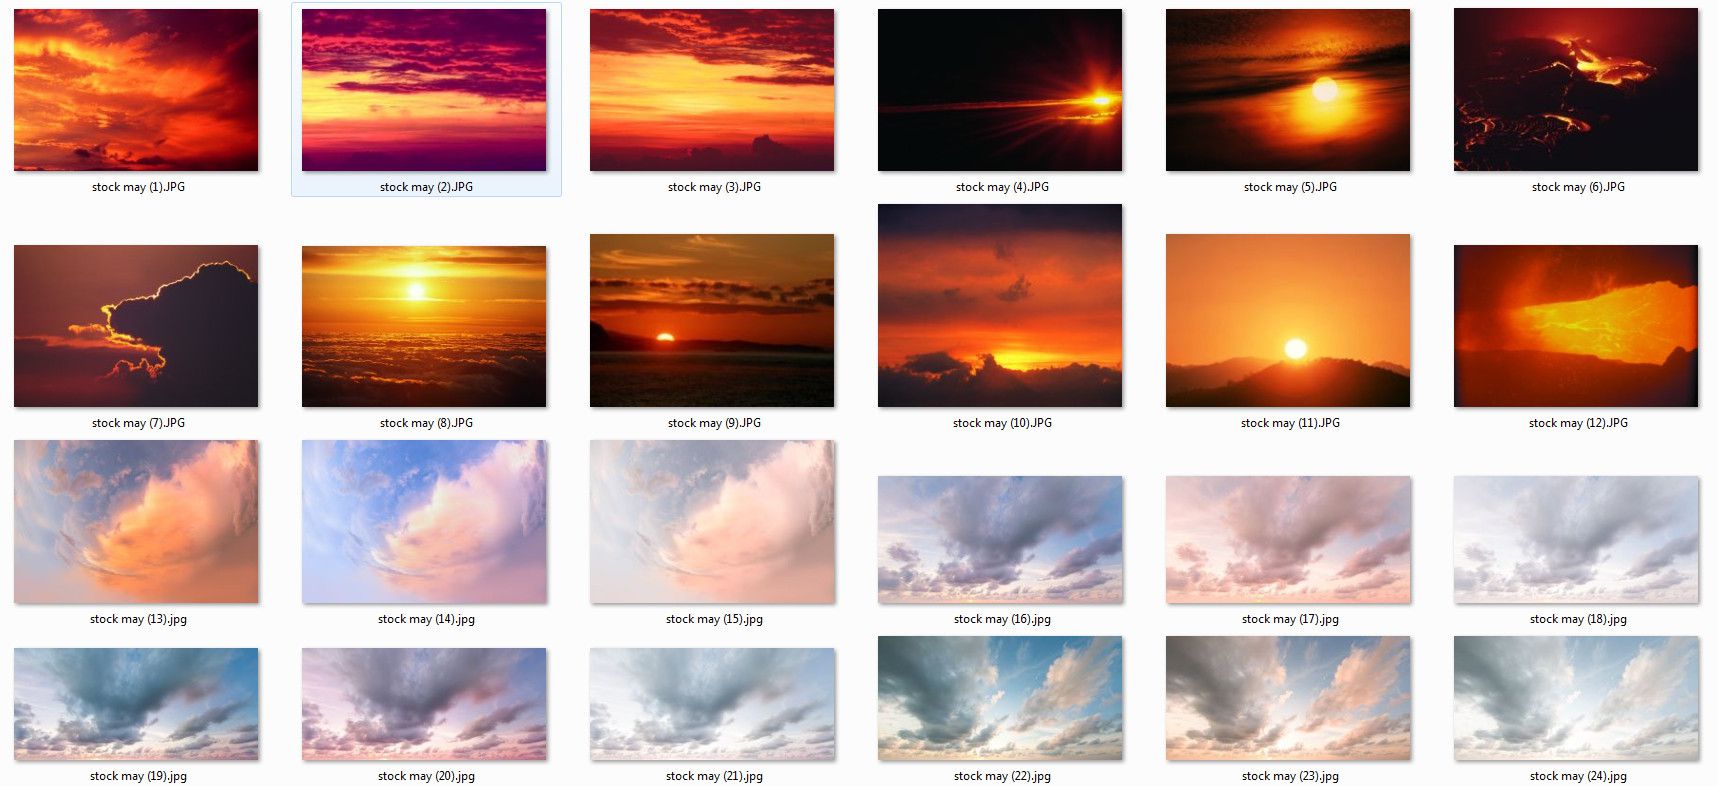 Với PSD stock mây, bạn hoàn toàn có thể sáng tạo ra những bức ảnh đẹp mắt với đám mây kỳ lạ. Cùng với công nghệ thiết kế đồ họa hiện đại, PSD stock mây là một công cụ hữu ích để giúp bạn tạo nên những tác phẩm nhiếp ảnh đẹp mắt.